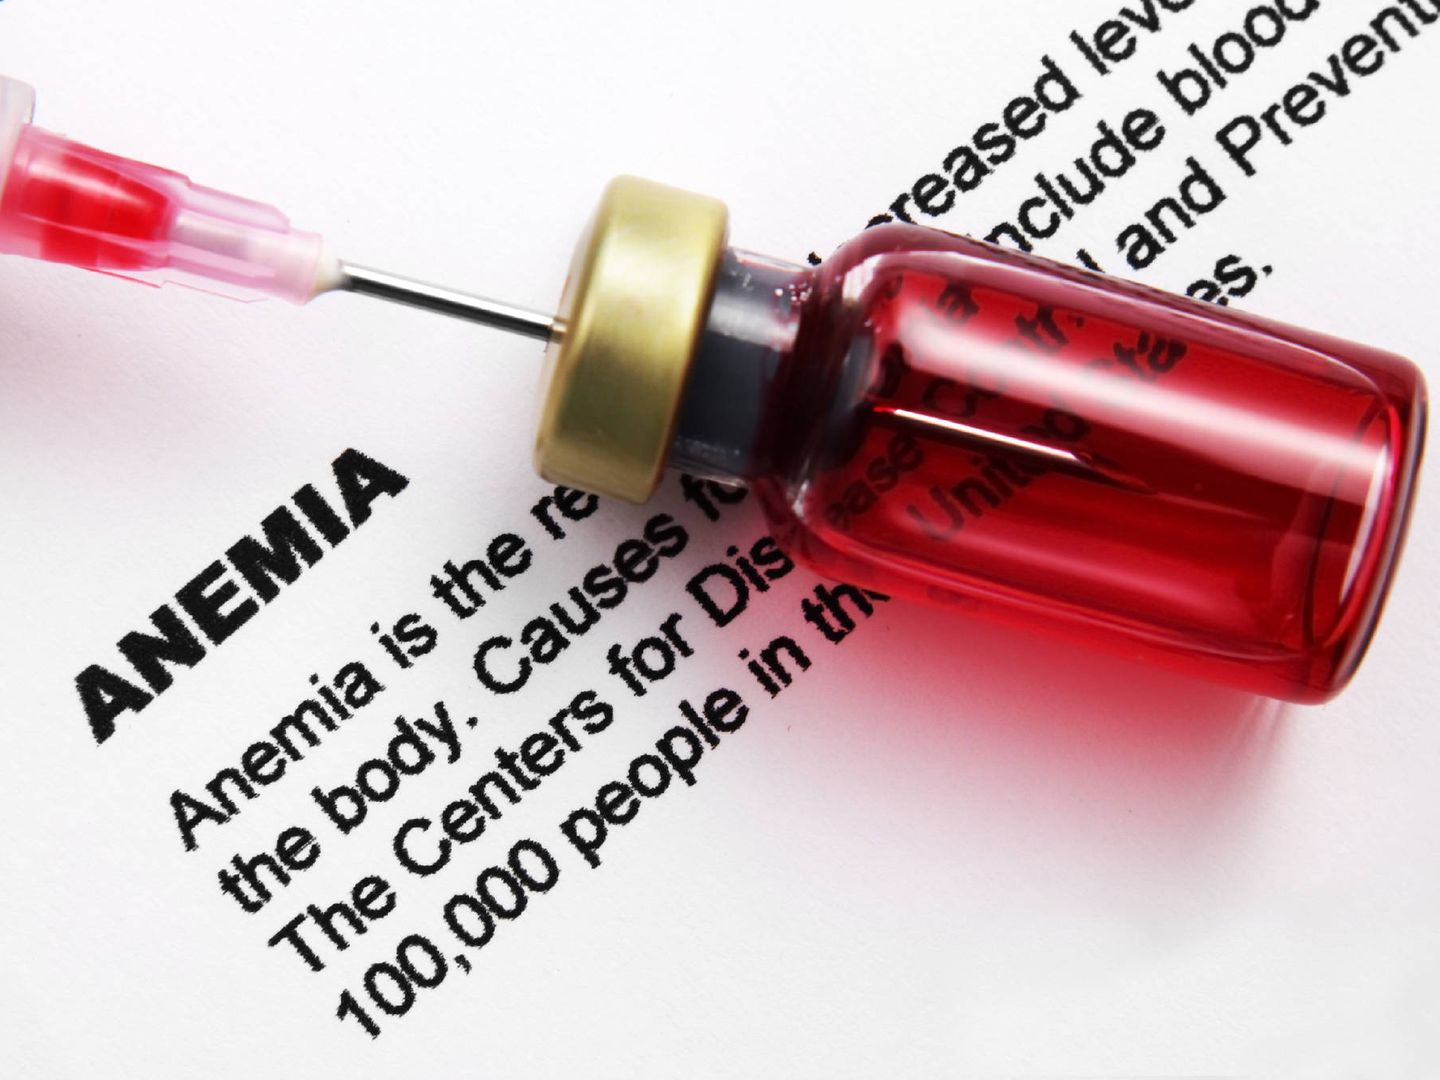 La anemia está producida por una carencia de hierro. (iStock)